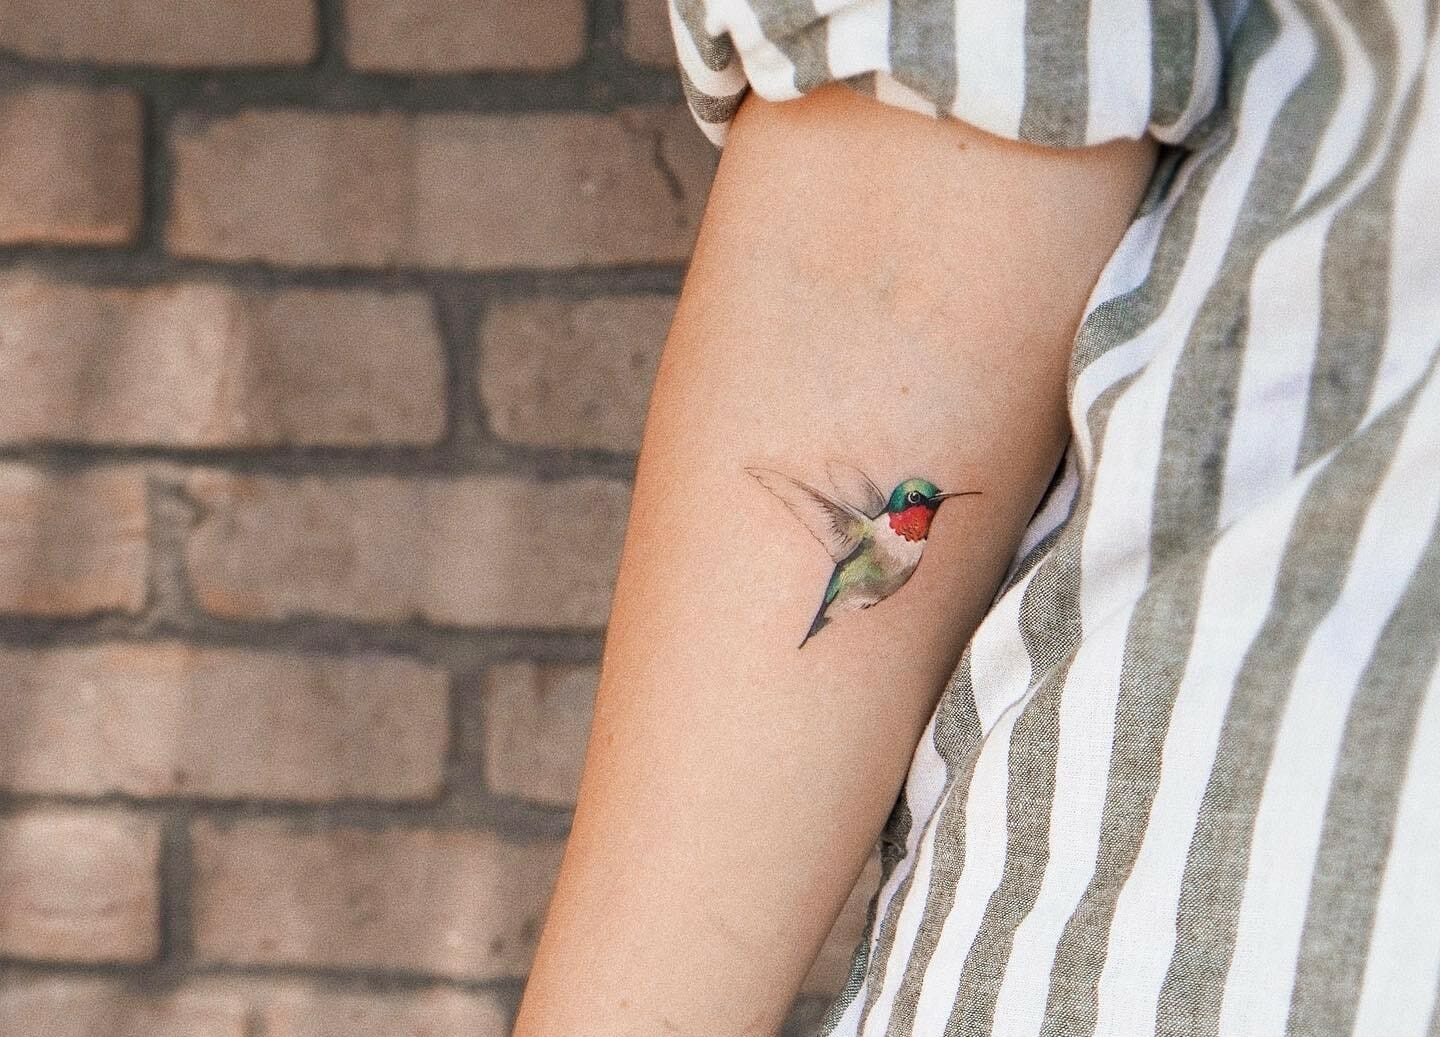 The Prettiest Hummingbird Tattoo Ideas  Tattoo Glee